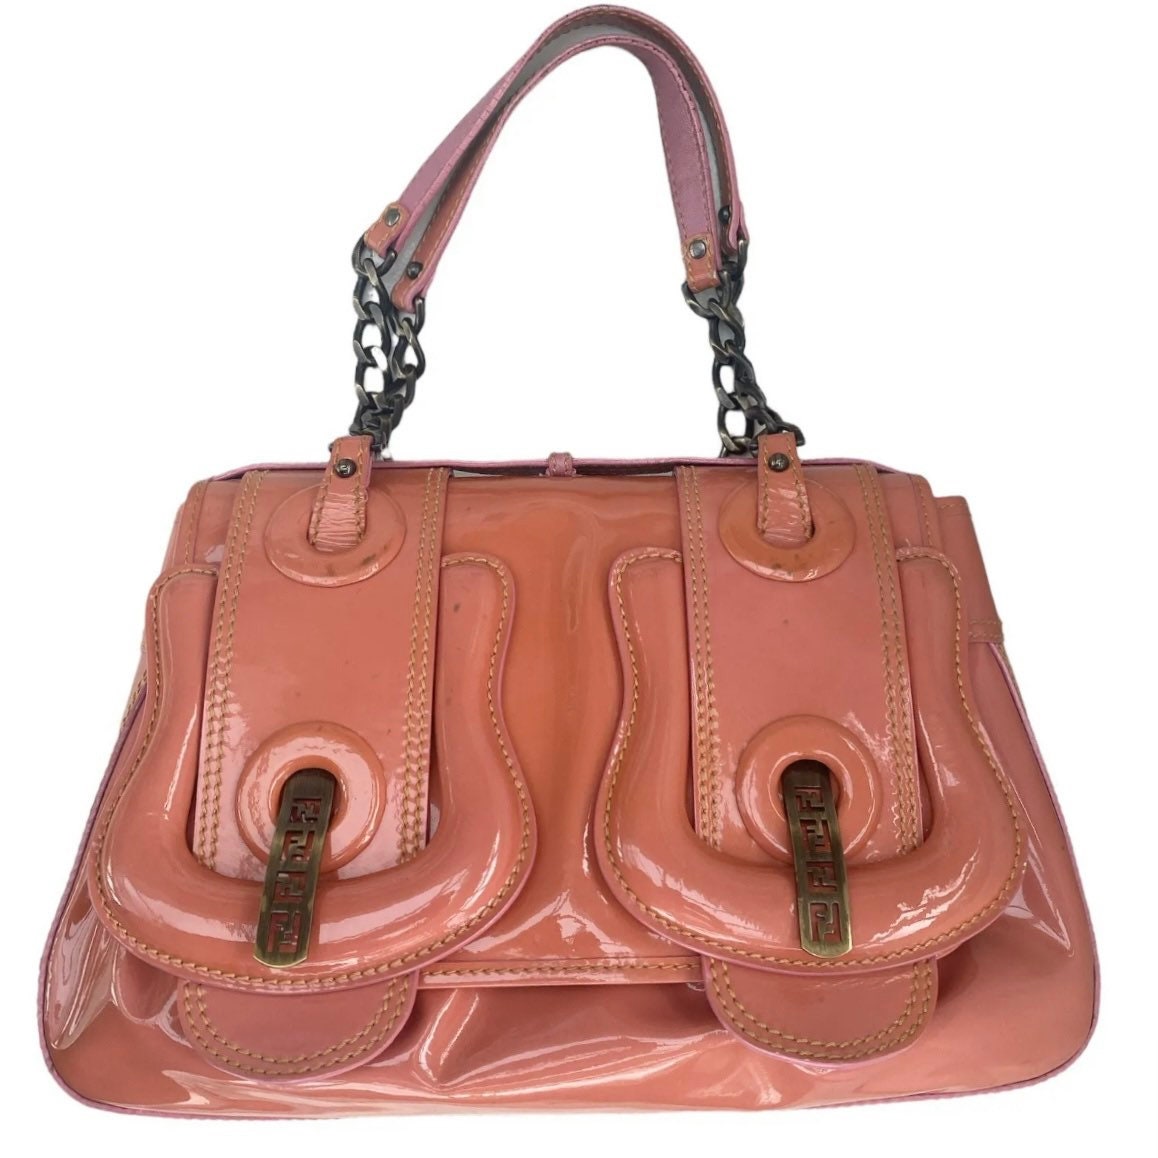 FENDI Selleria Leather Shoulder Bag Beige 8BR648, Fendi Western